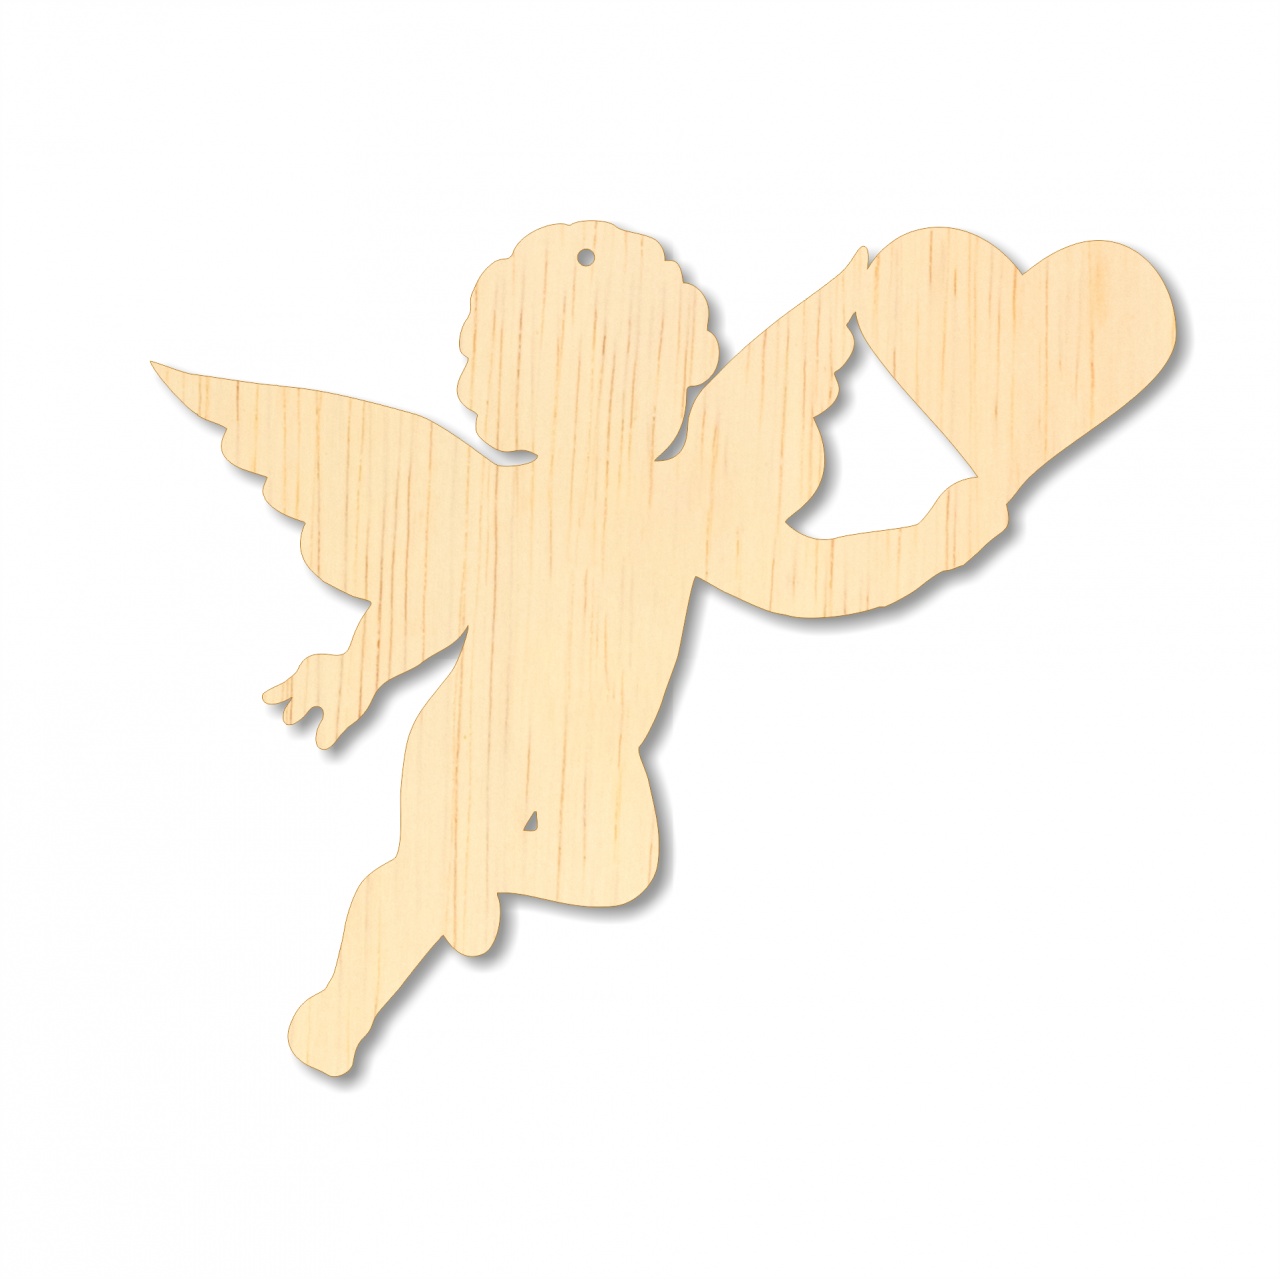 Îngeraș Cupidon cu inimă, 5 cm, placaj lemn